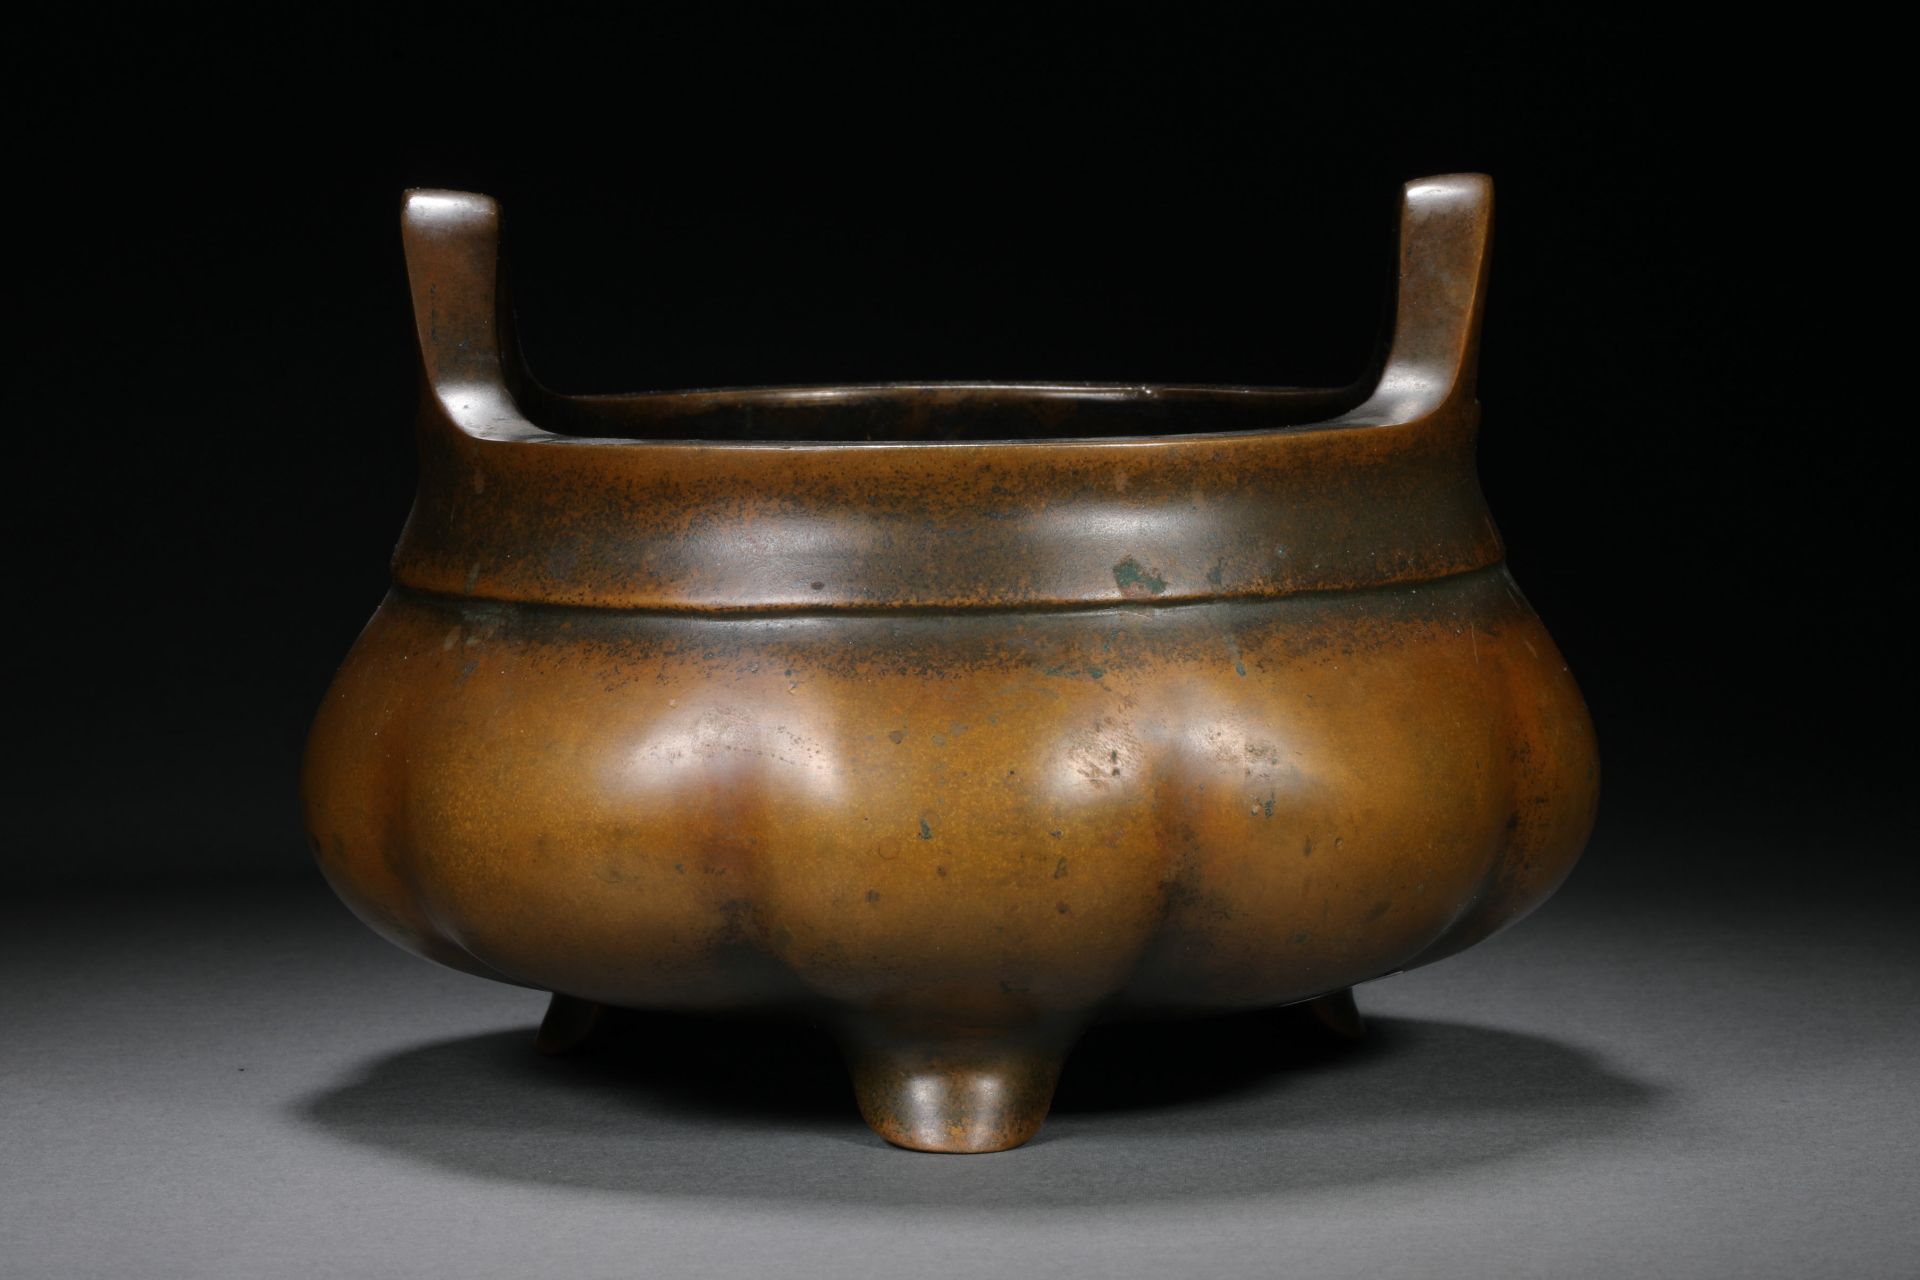 Qing dynasty bronze Xuande model incense burner - Image 2 of 8